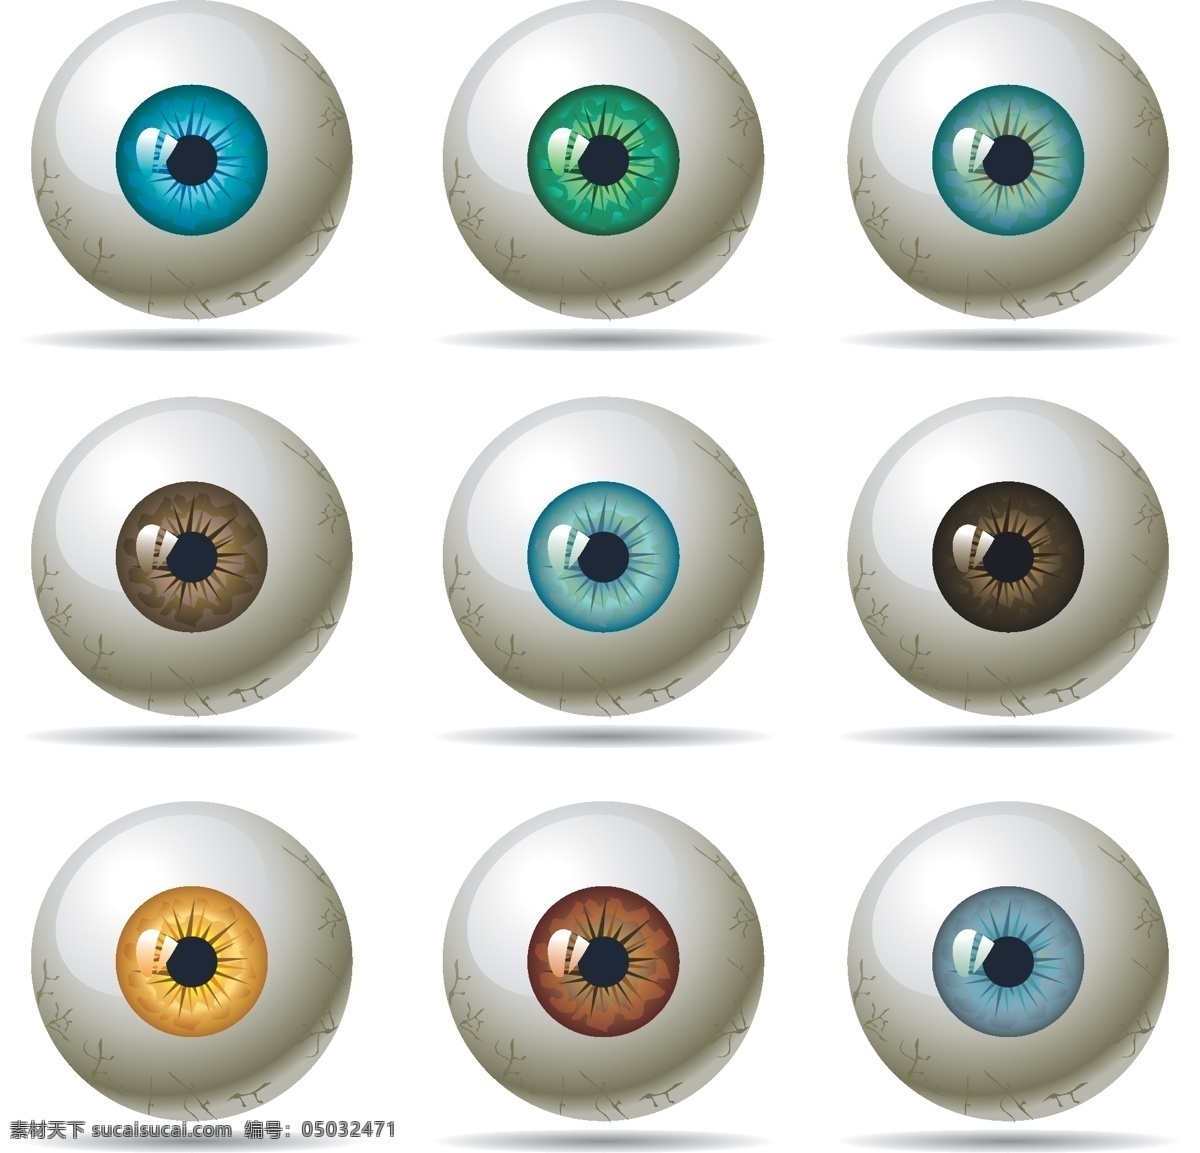 彩 瞳 眼球 矢量 眼睛 眼珠 彩瞳 眼球设计 矢量图 其他矢量图